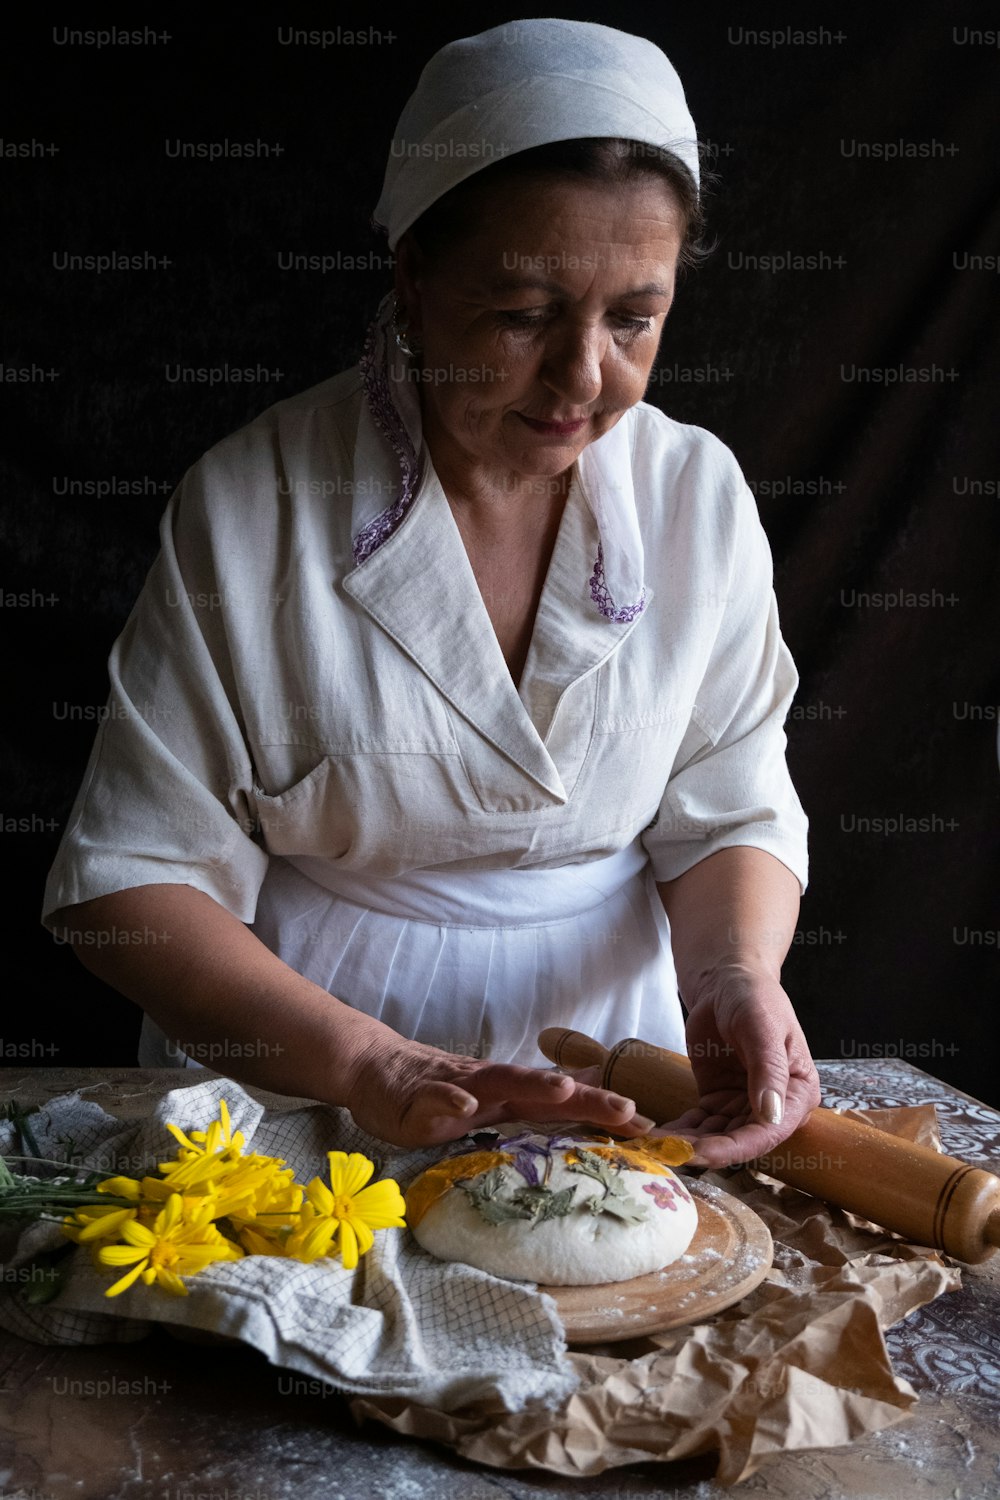 Eine Frau backt einen Kuchen auf einem Tisch